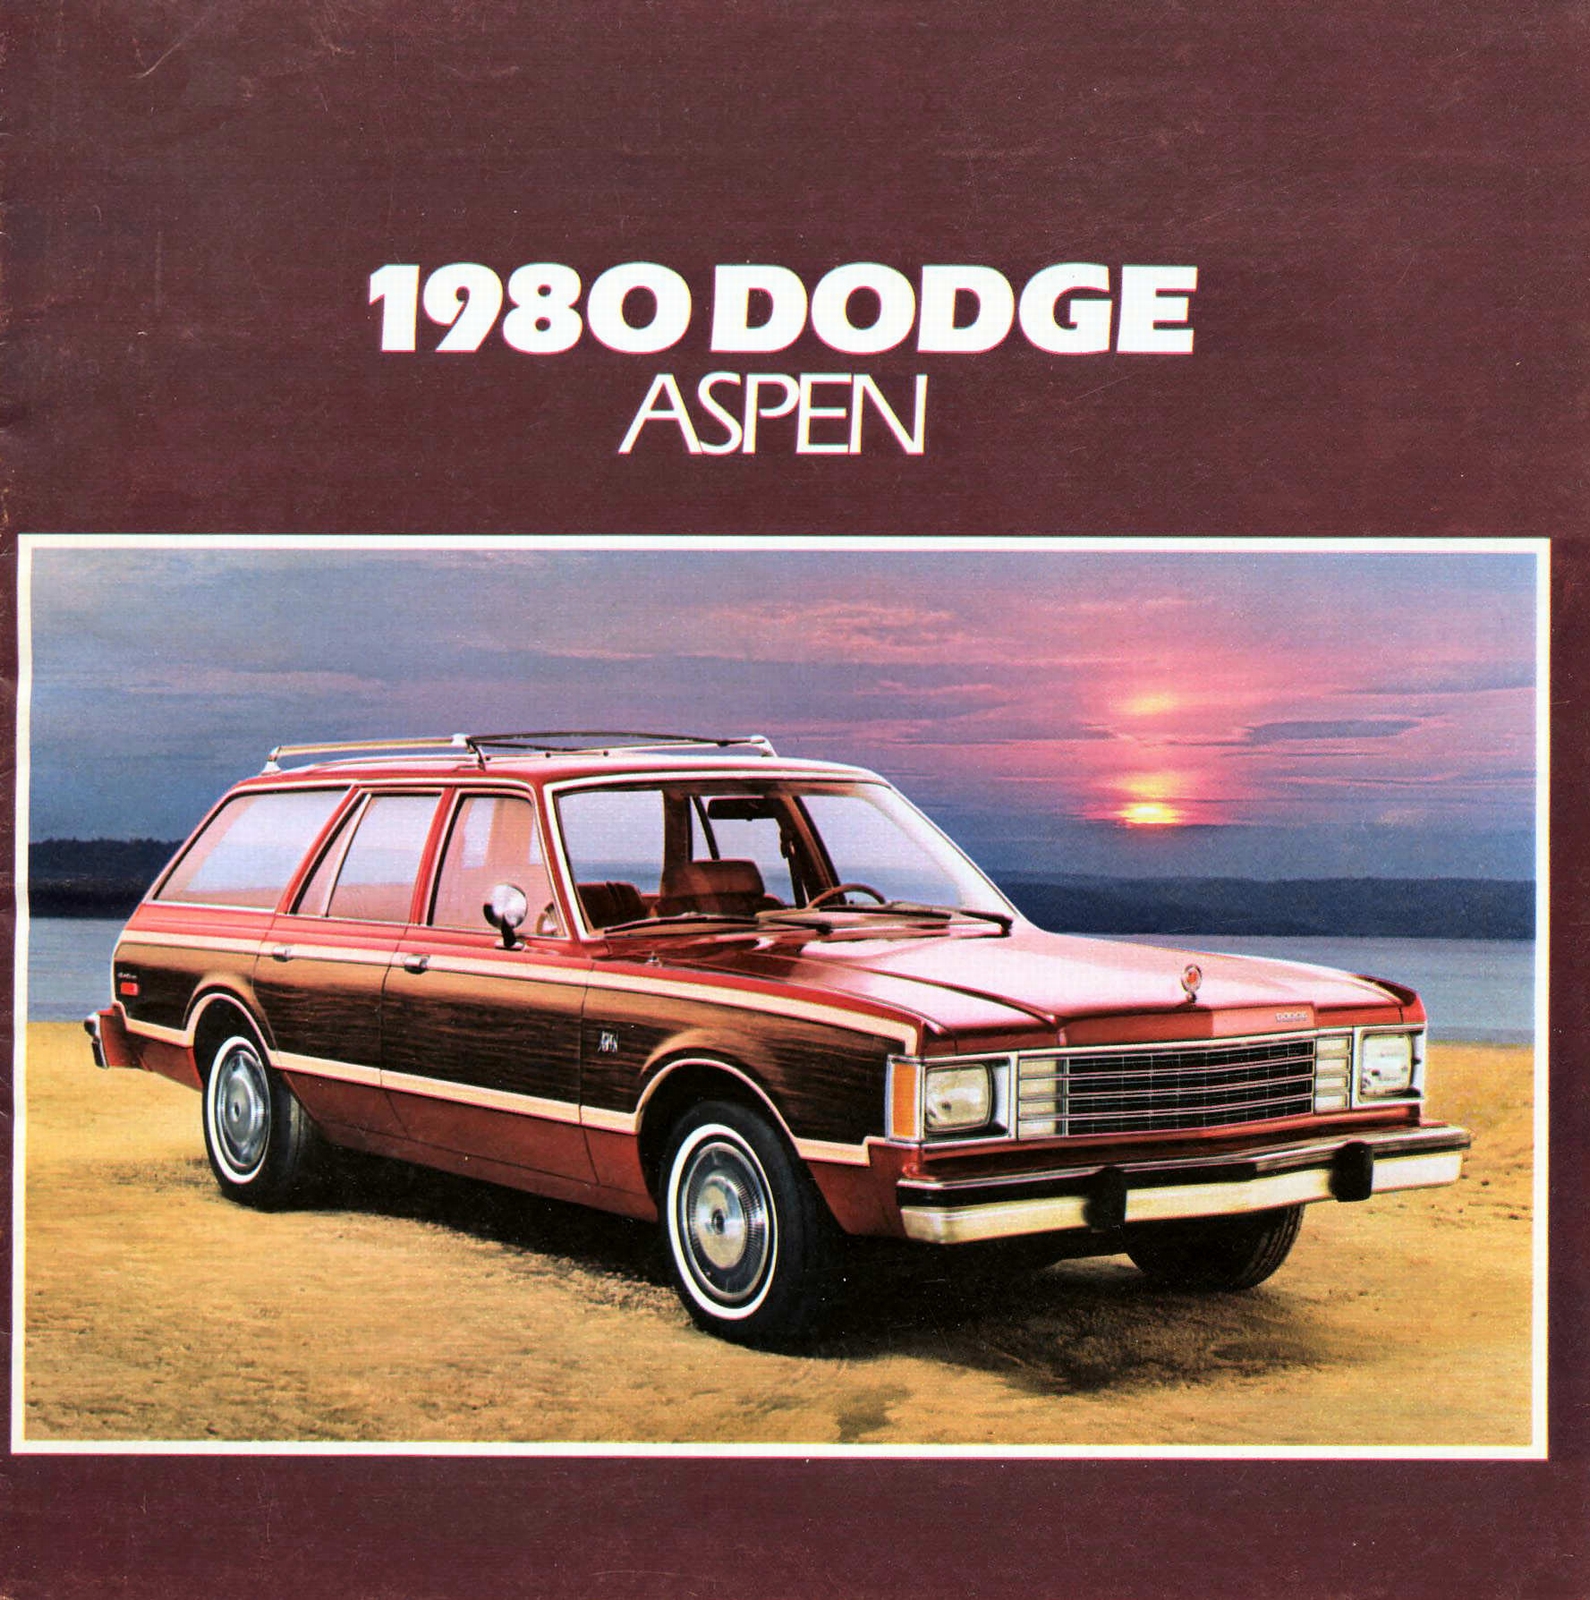 n_1980 Dodge Aspen-01.jpg